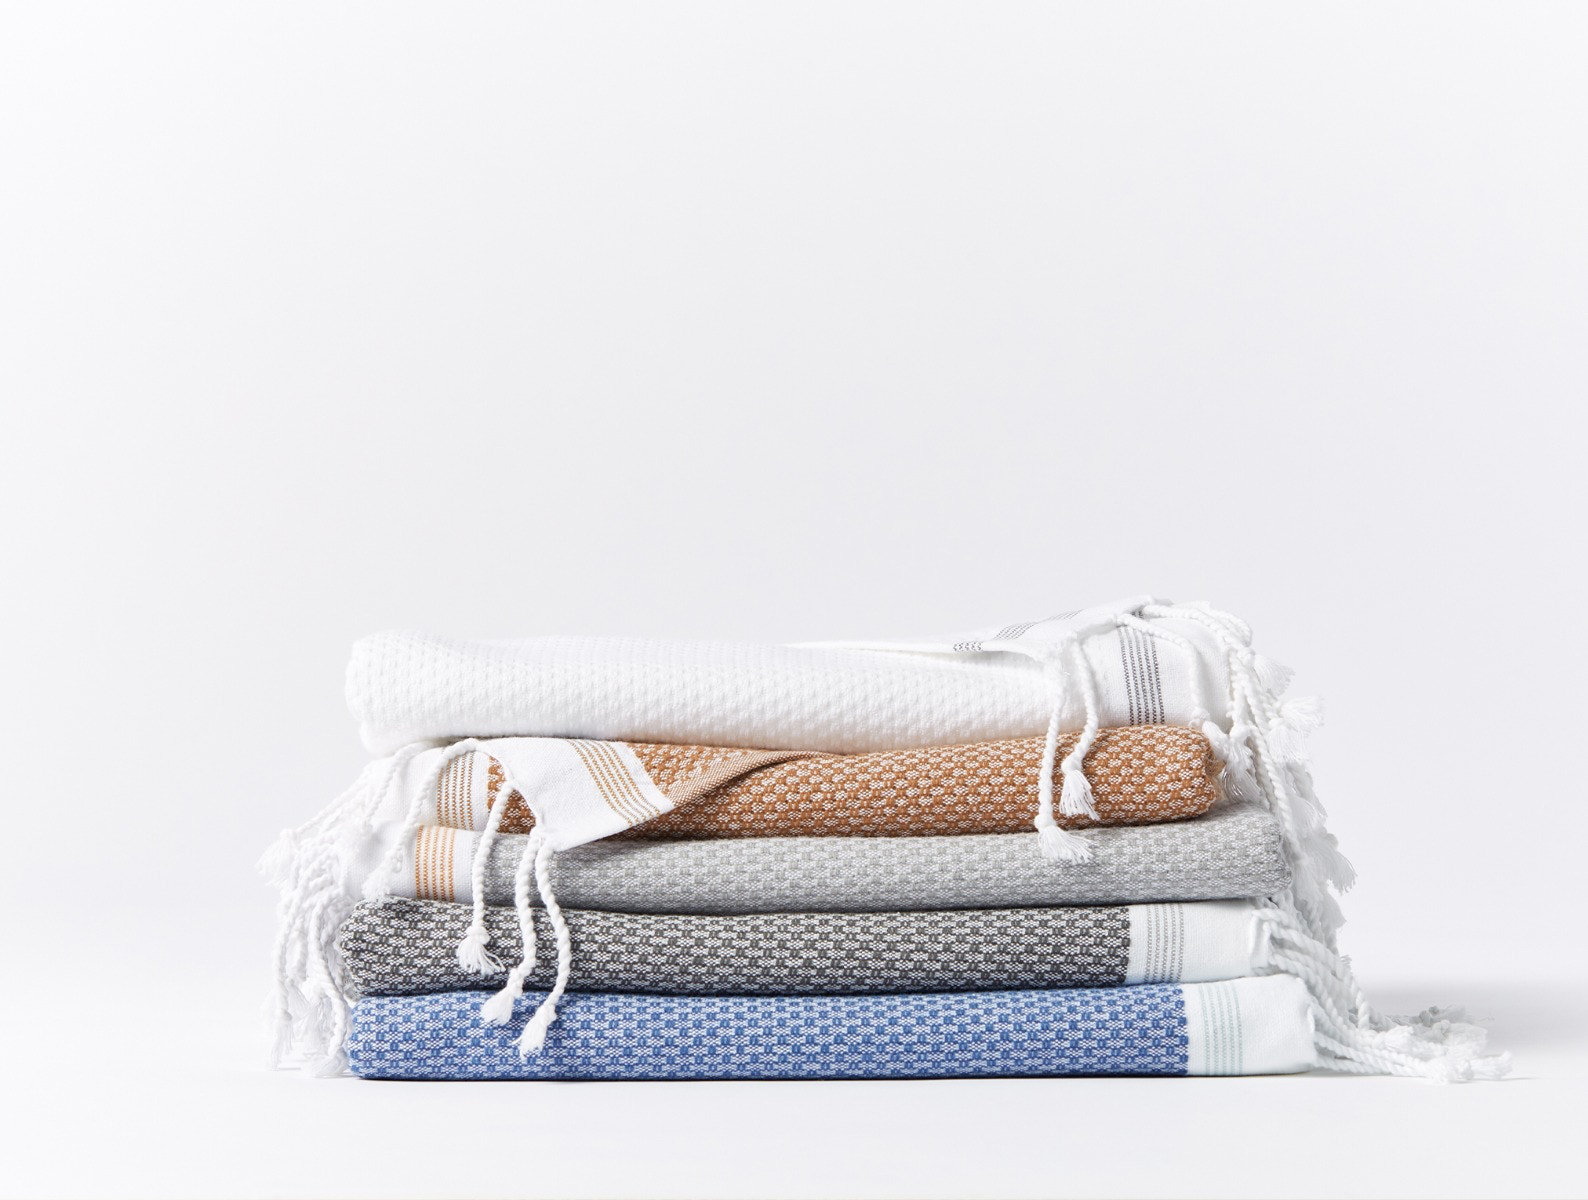 https://assets.wfcdn.com/im/72338326/compr-r85/2099/209951121/mediterranean-6-piece-100-cotton-towel-set.jpg